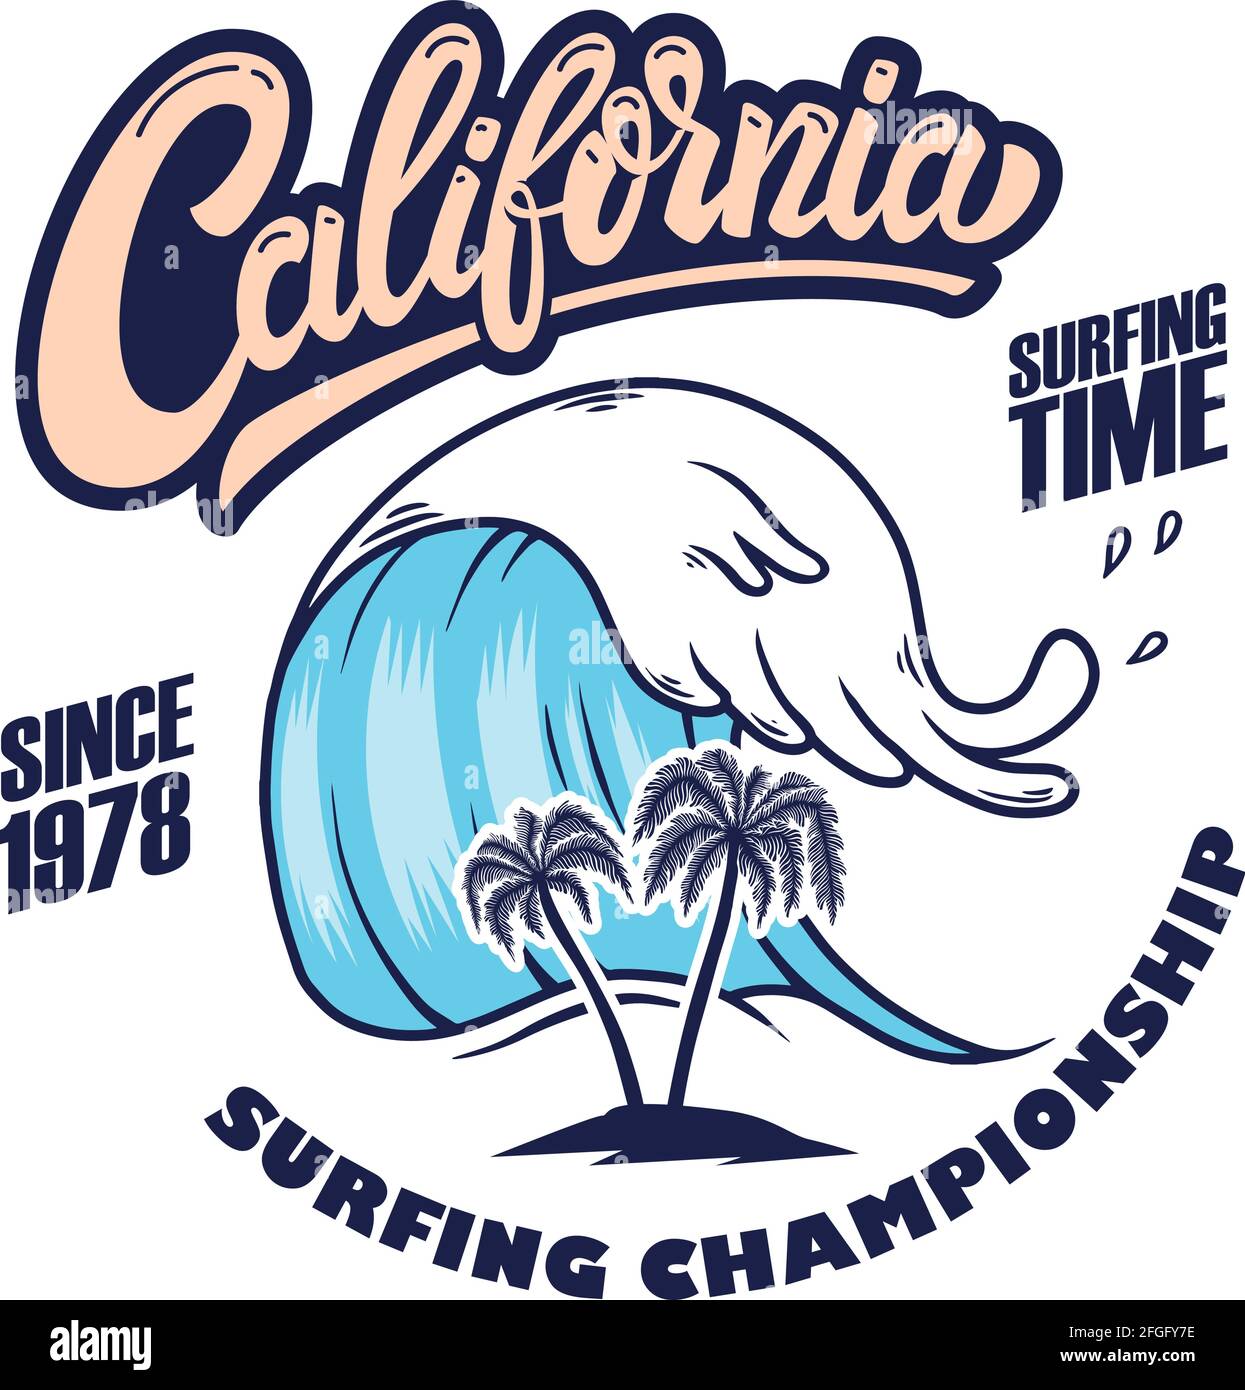 California Surfing Championship. Emblem-Vorlage mit Wellen und Handflächen. Gestaltungselement für Plakat, Karte, Banner, Zeichen, Emblem. Vektorgrafik Stock Vektor